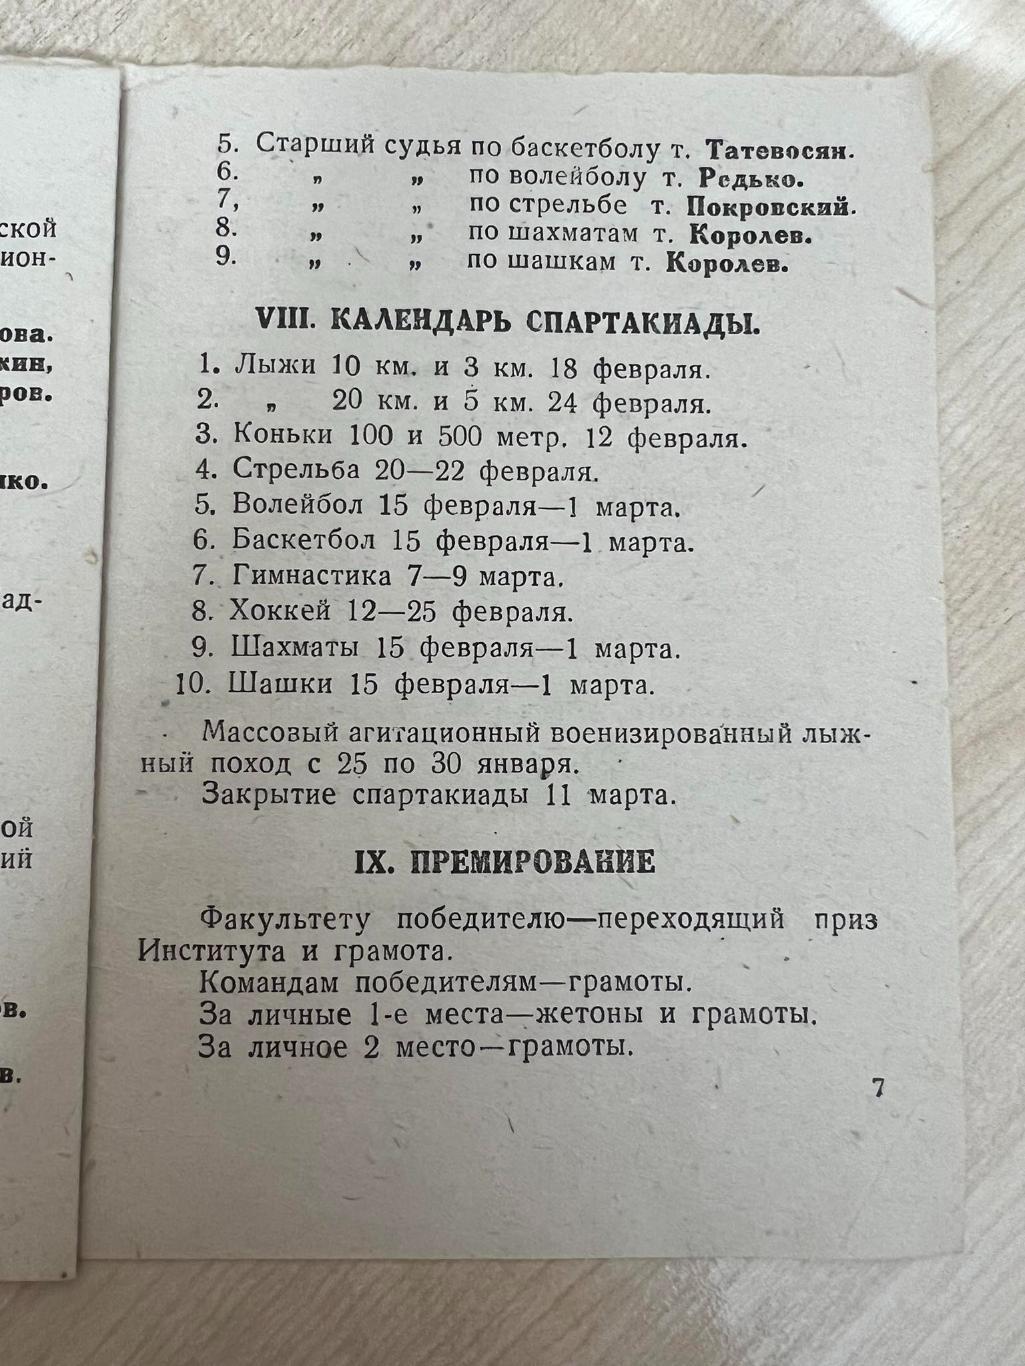 Положение и программа - 1 институтская Спартакиада Москва 1940 Хоккей, баскетбол 3